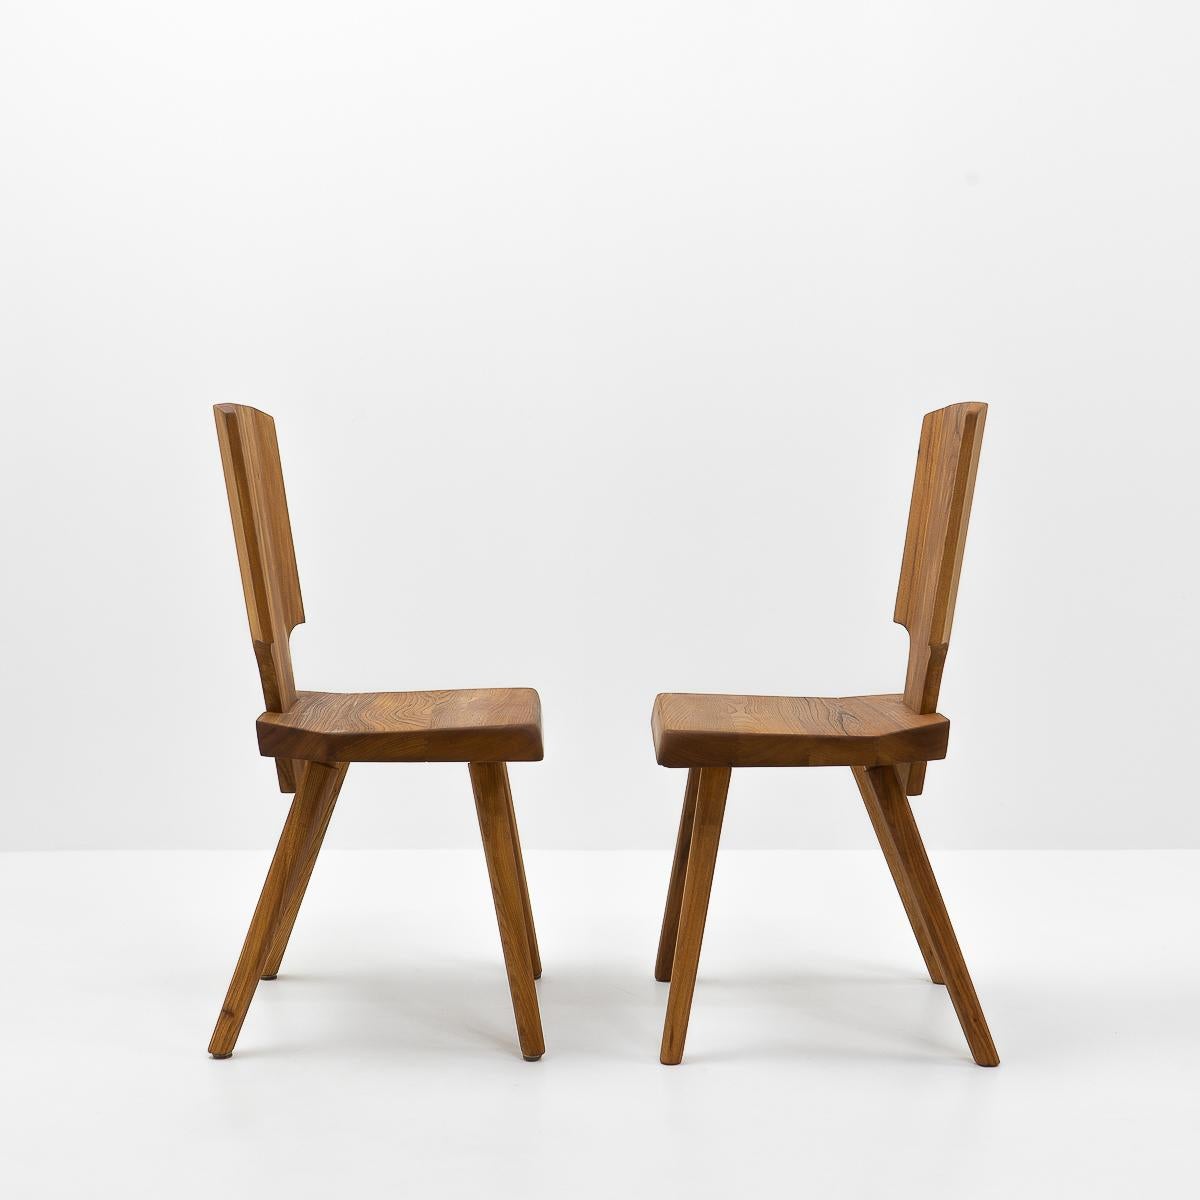 Fin du 20e siècle Pierre Chapo, chaises S28 françaises en orme, années 1980 en vente